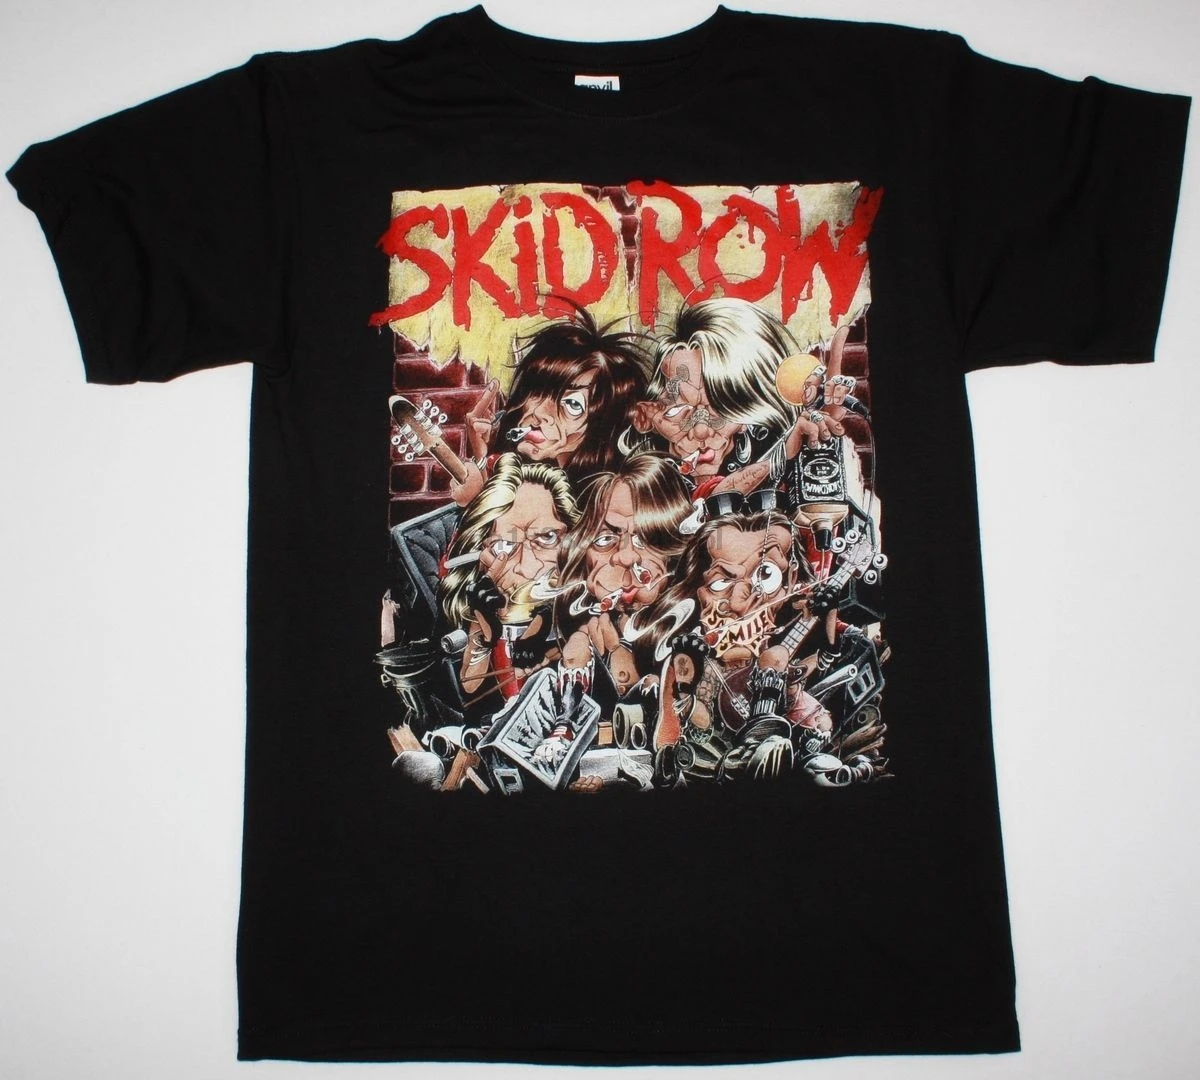 Фото Skid Row B SIDE себя 92 SKIDROW с надписью Mötley Crüe необходимые вещи Металл - купить